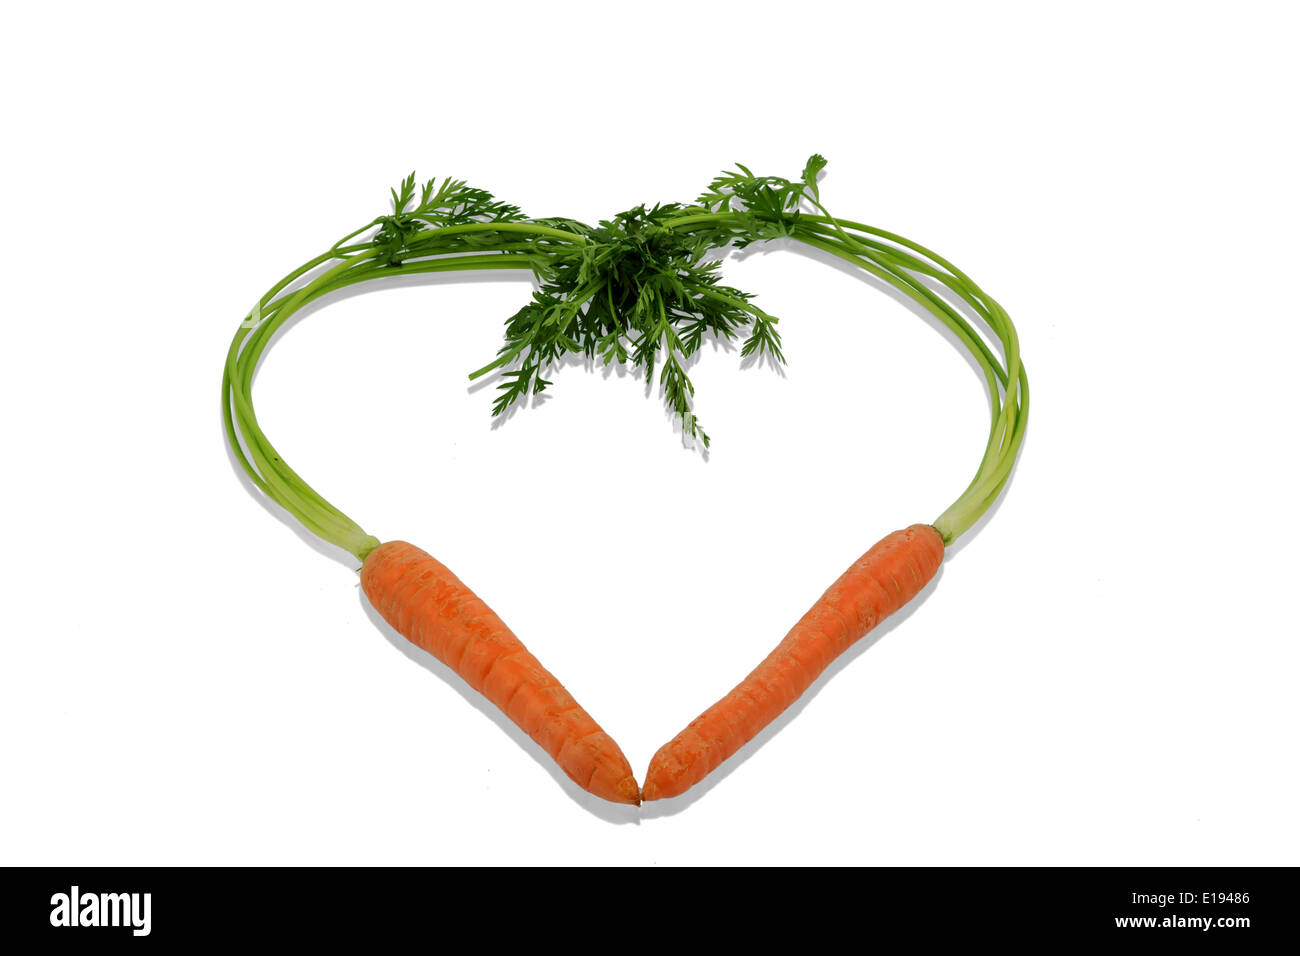 Ein Herz aus Mˆhren aus biologischem Anbau. Frisches Obst und Gem¸se ist immer gesund. Symbolfoto f¸r gesunde Ern‰hrung. Stock Photo